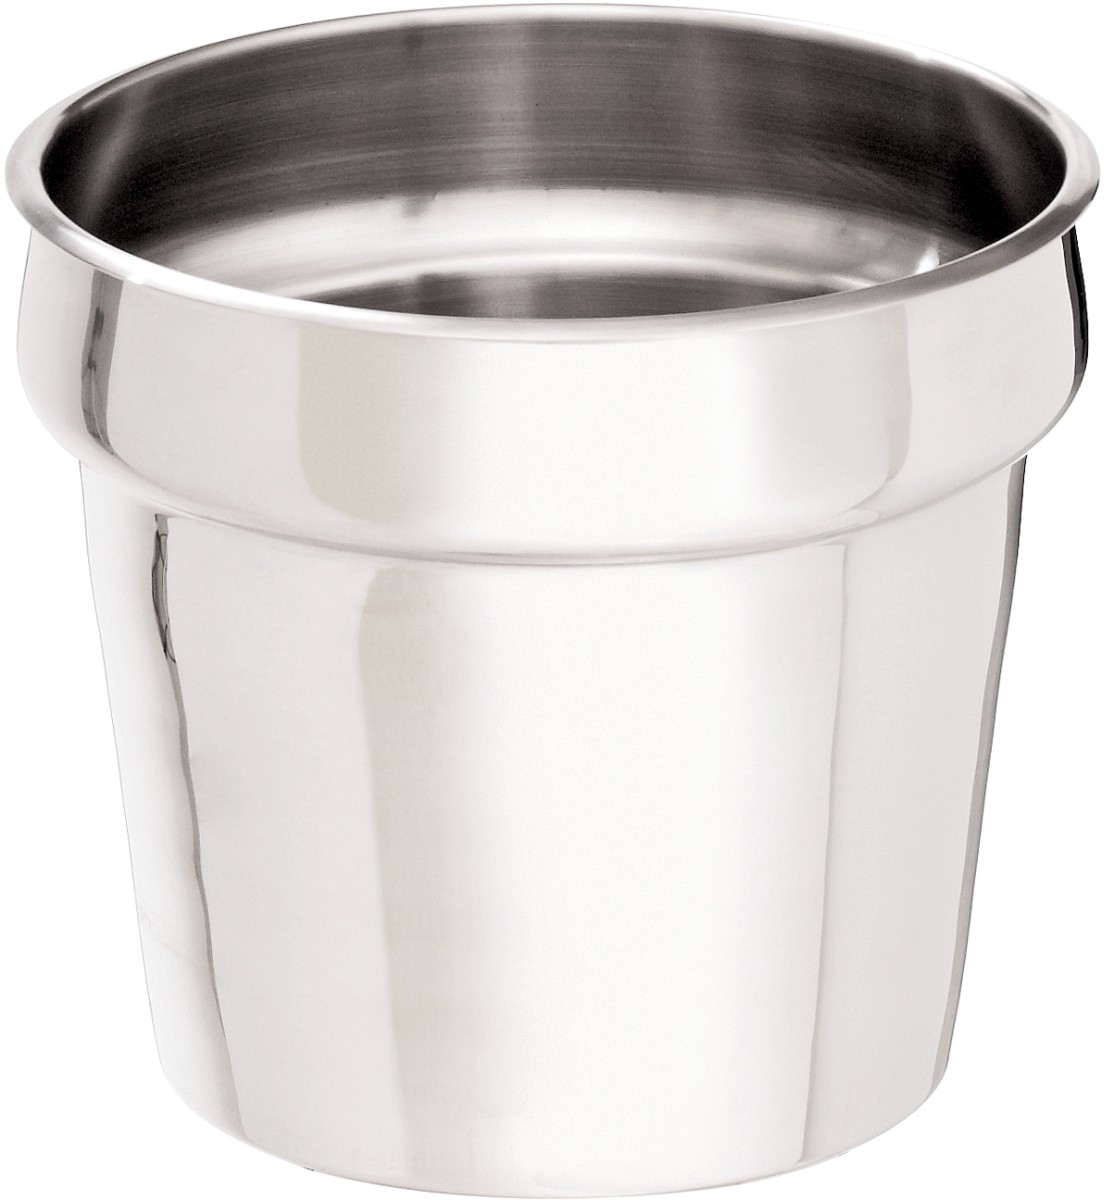  Bartscher Insert pot 6,5 litres for hotpot 